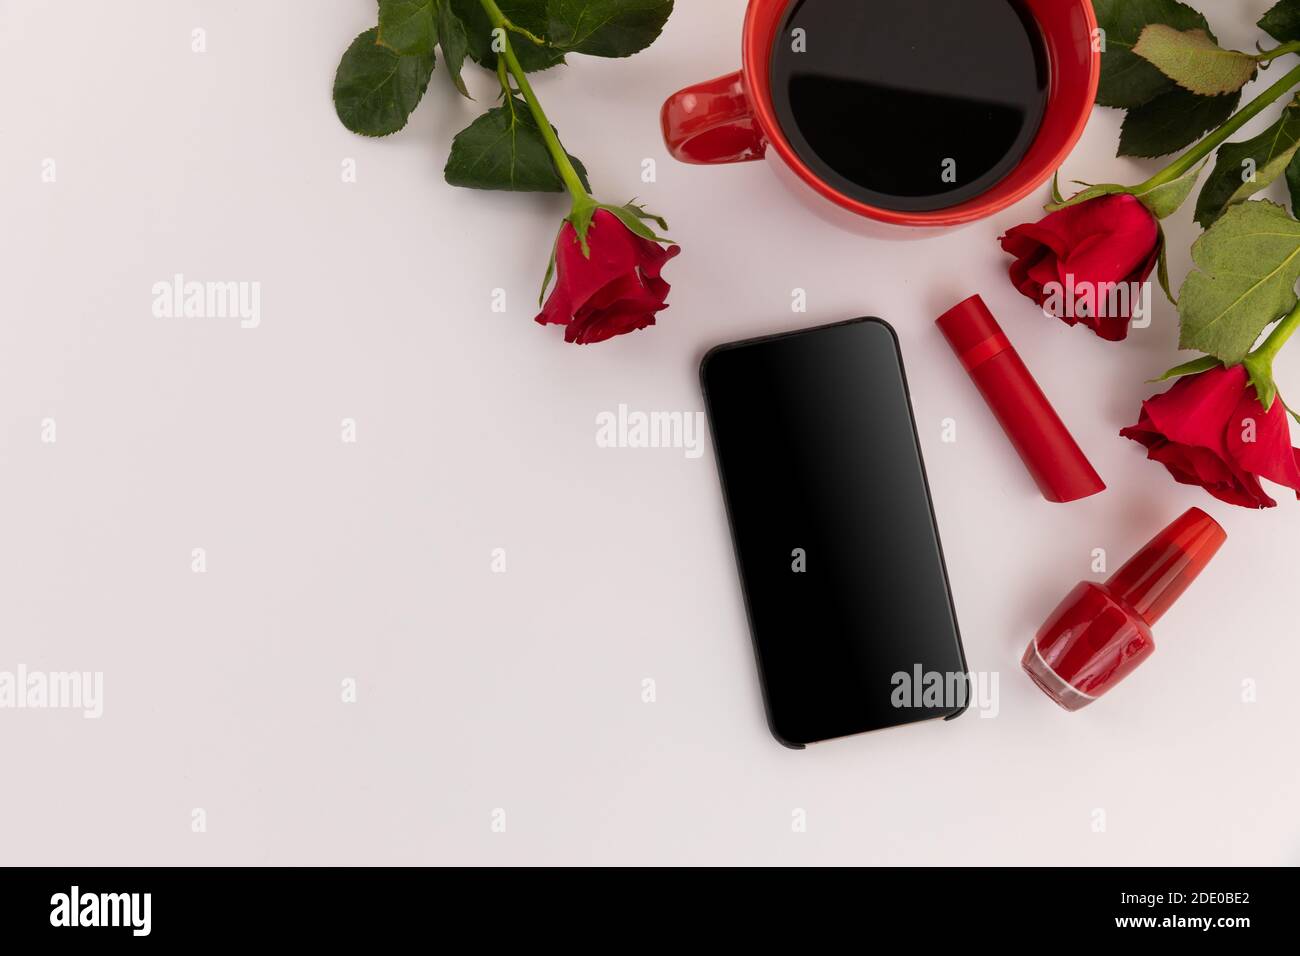 Smartphone, rossetto rosso, vernice per unghie, caffè e rose su sfondo bianco Foto Stock